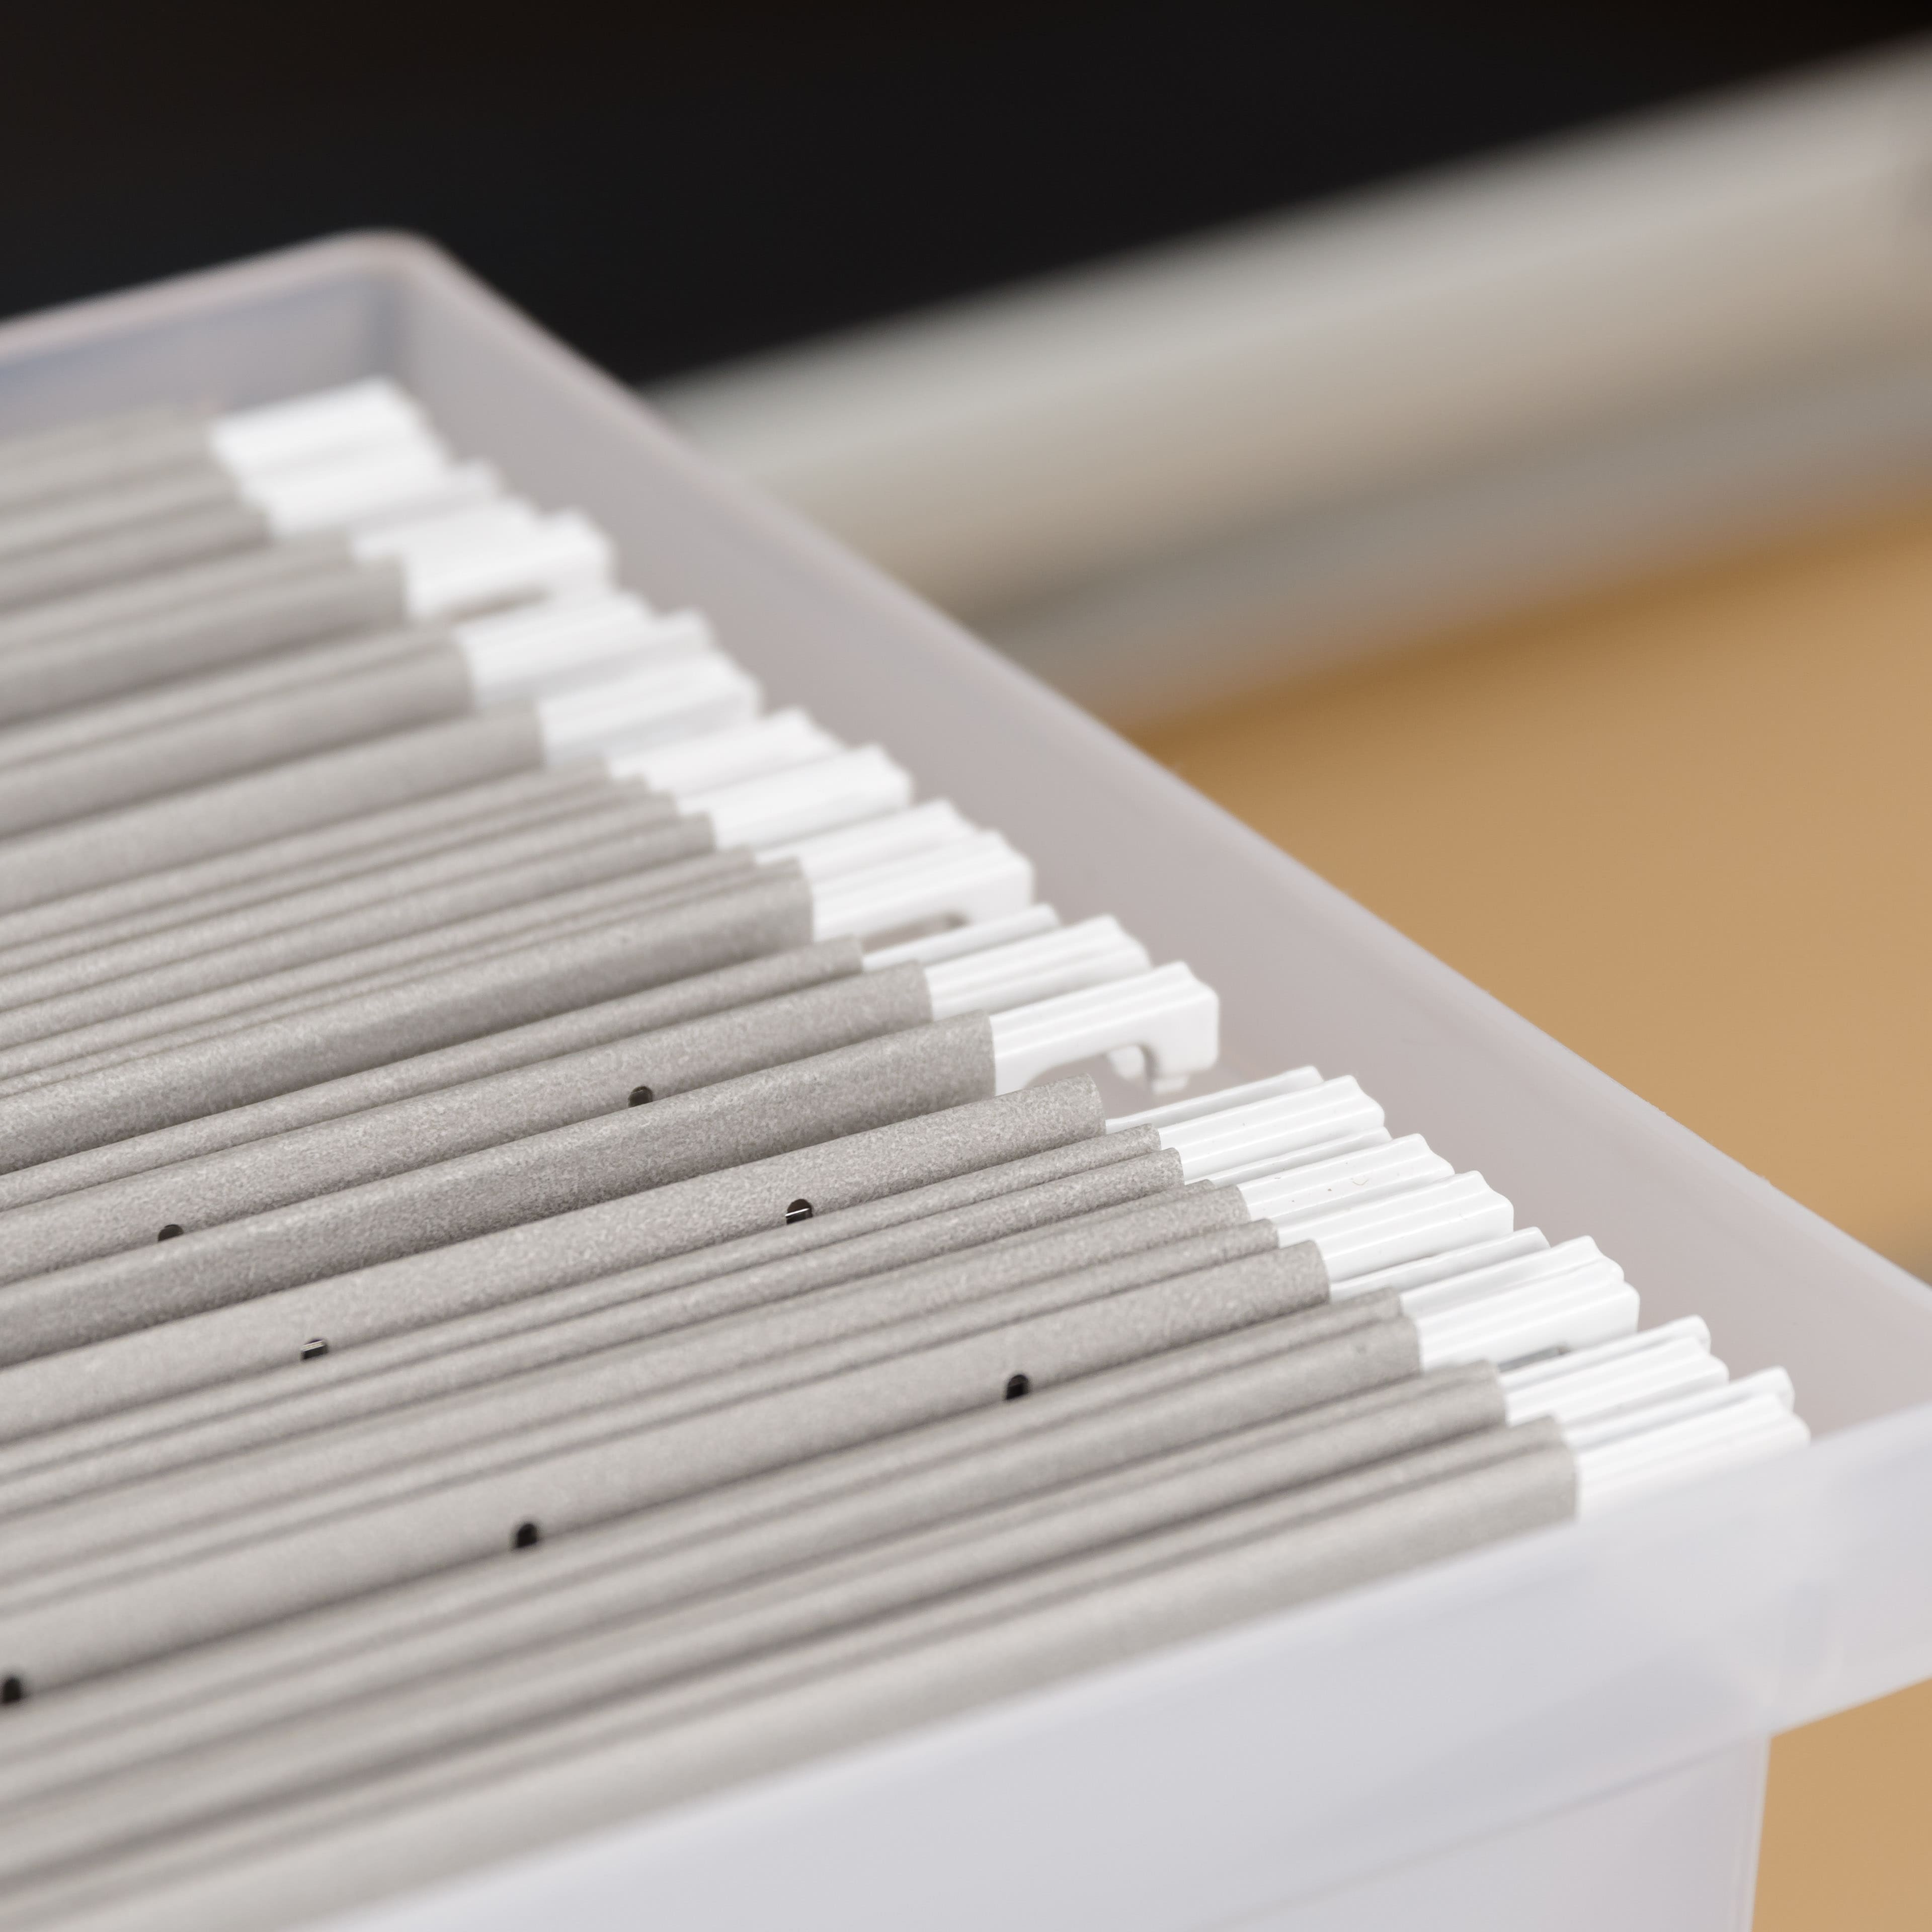 IRIS&#xAE; Medium Open Top Plastic File Box